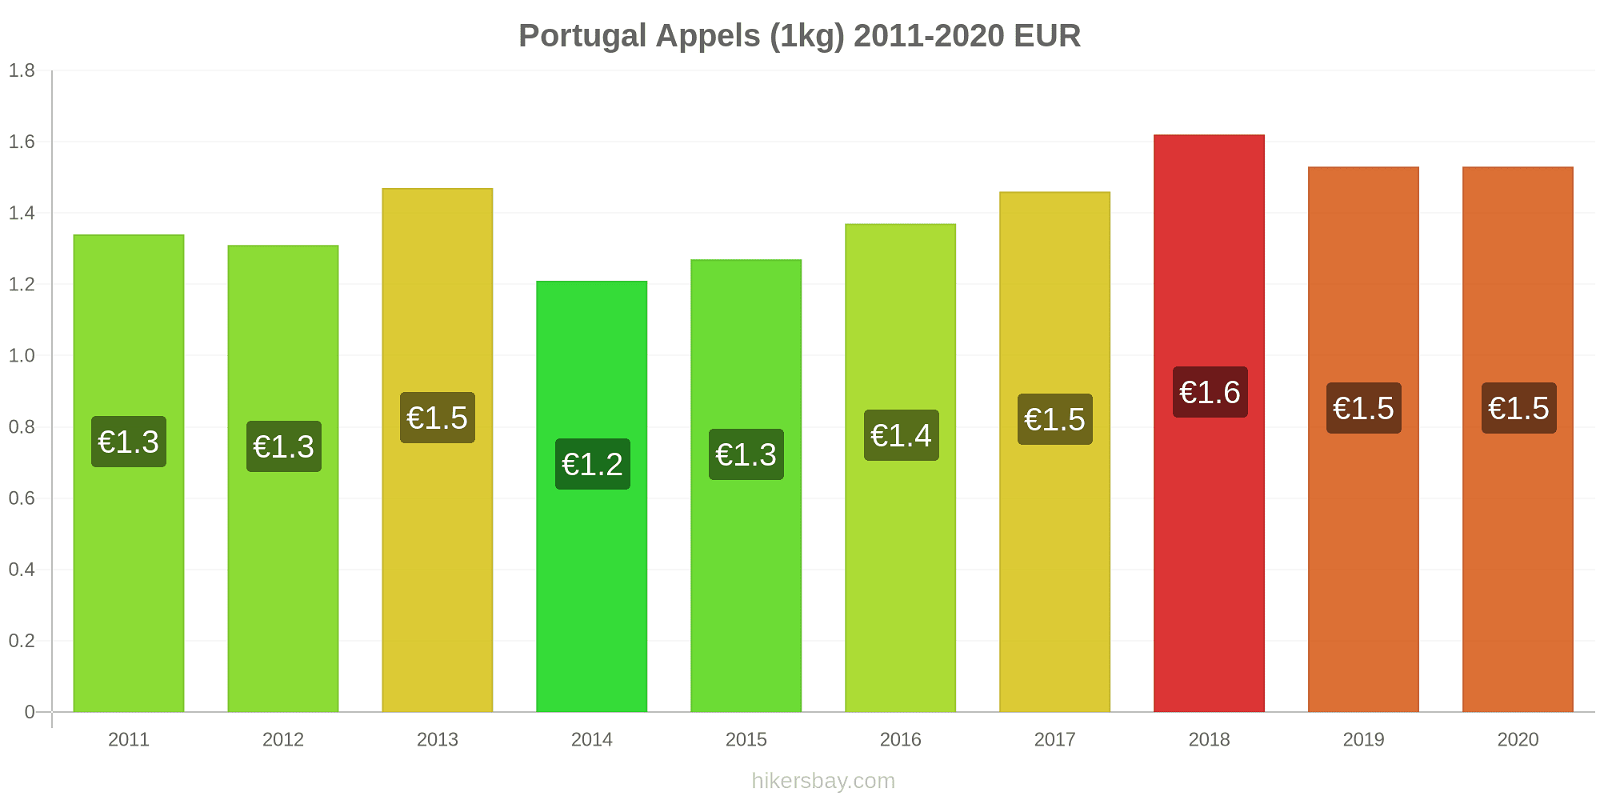 Portugal prijswijzigingen Appels (1kg) hikersbay.com